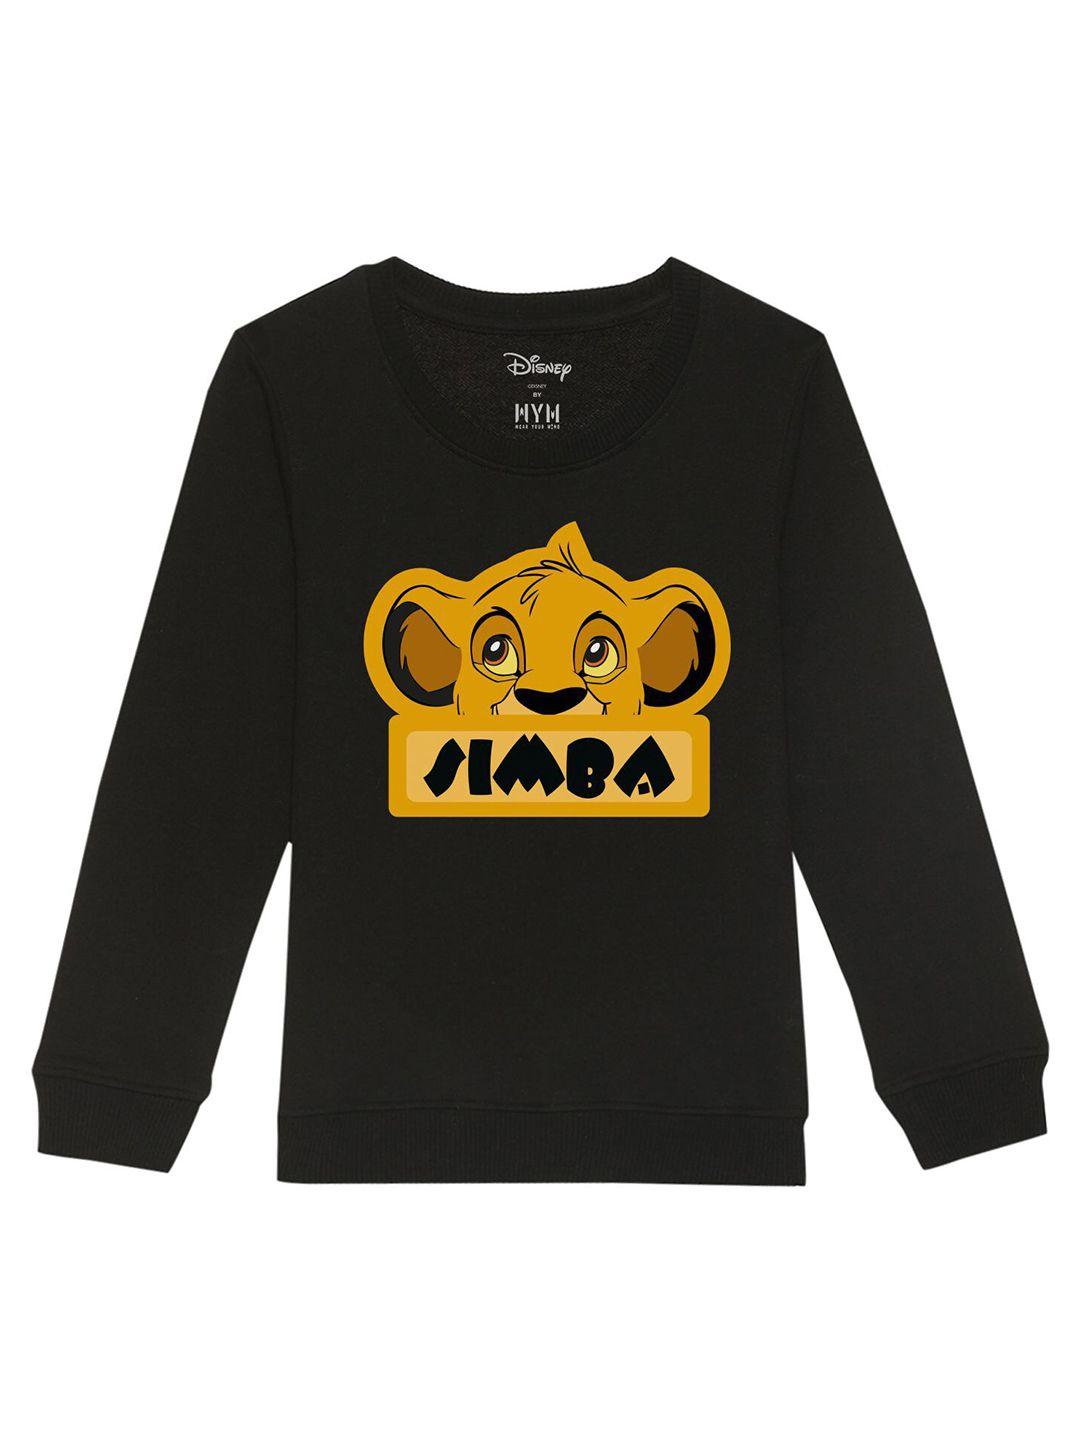 disney-by-wear-your-mind-kids-black-printed-sweatshirt